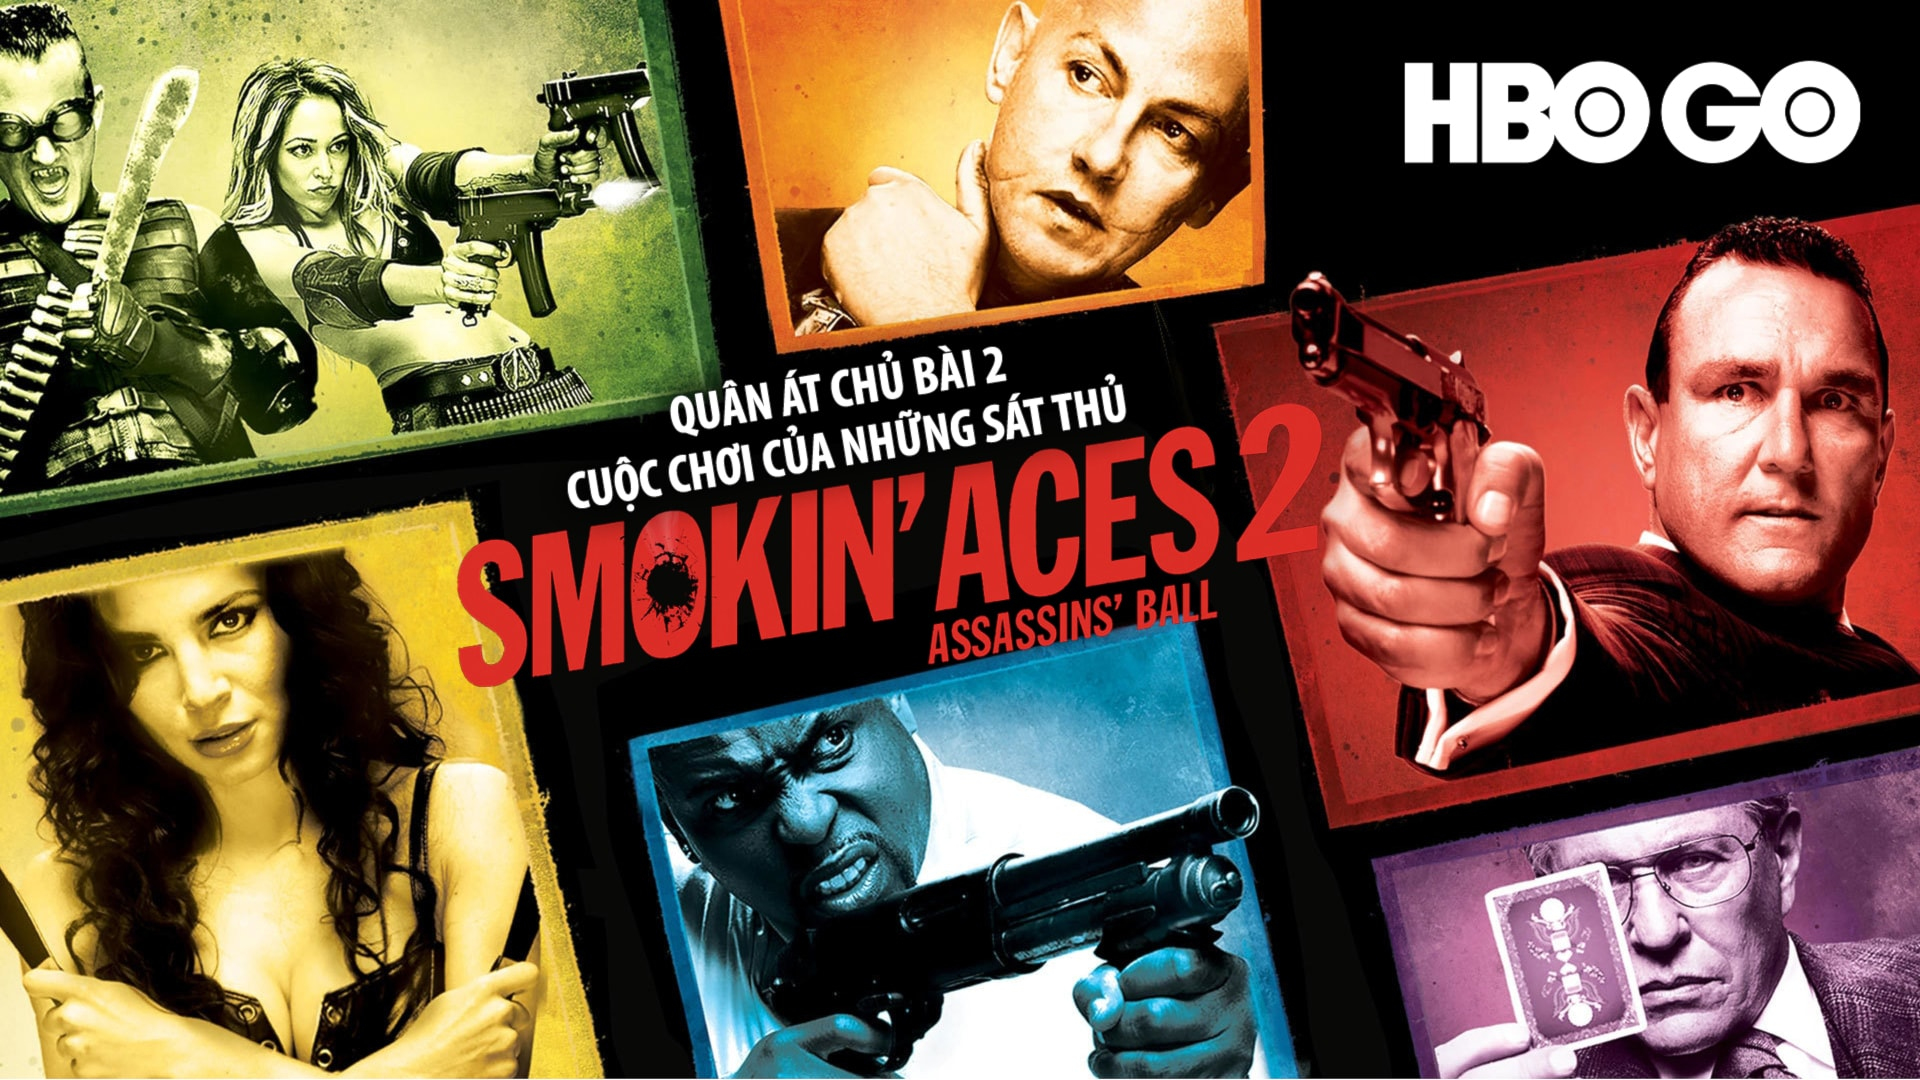 Smokin' Aces 2: Assassins Ball (2010)